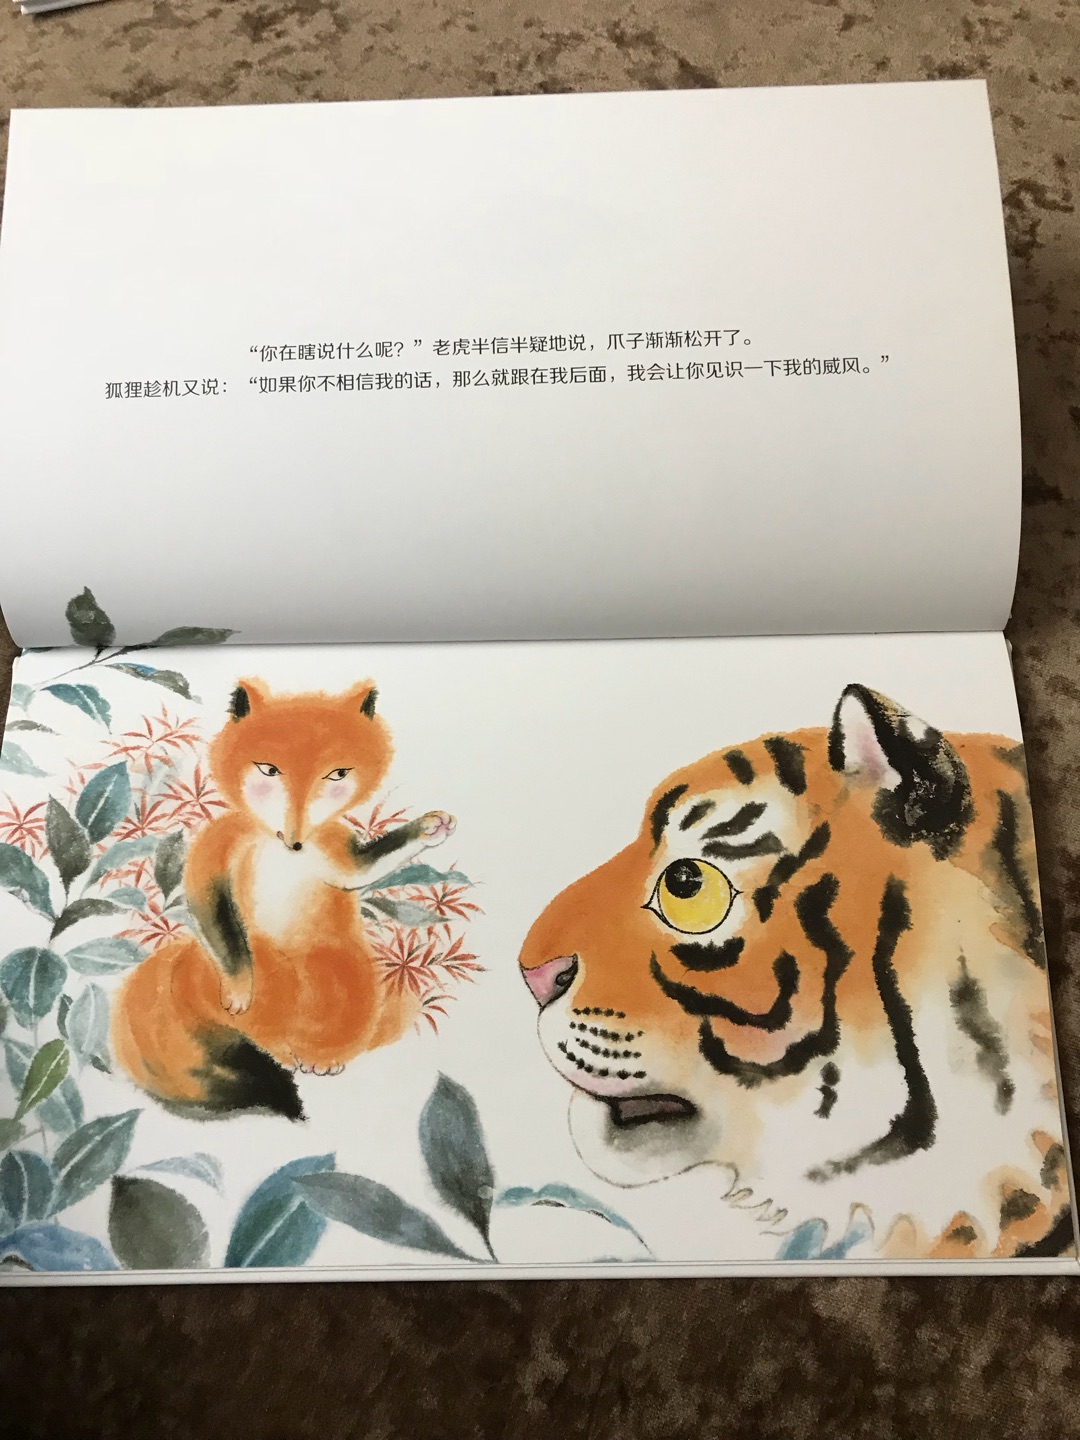 这套中国绘寓言故事很不错，很有中国风特色，故事内容读起来孩子也喜欢。喜欢在买东西，发货快品类多。